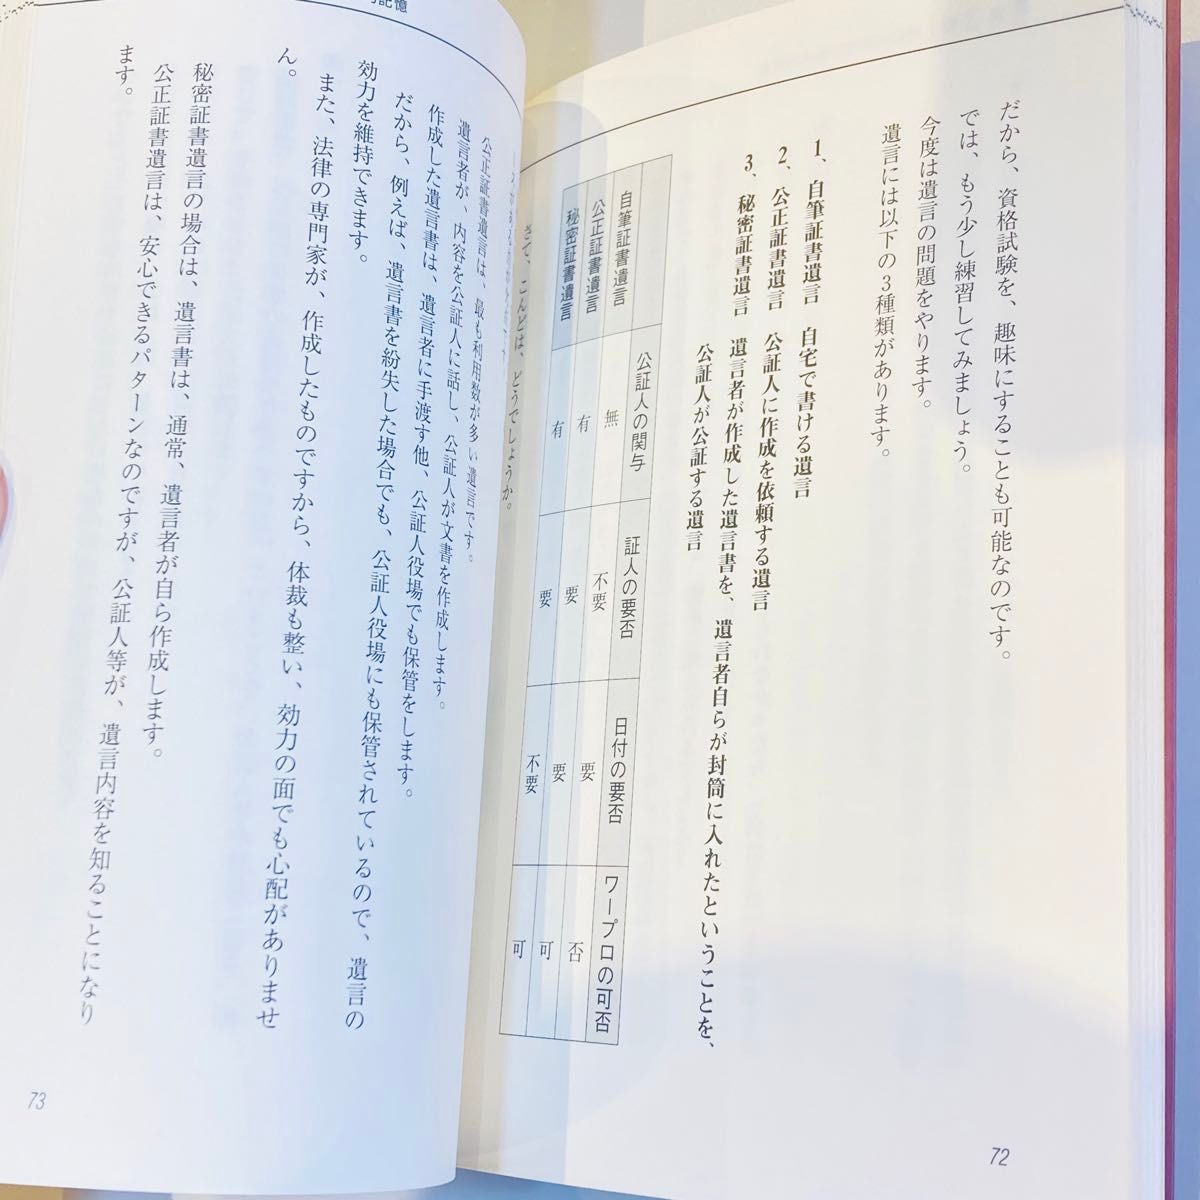 山本浩司 35歳からの「資格試験」勉強法